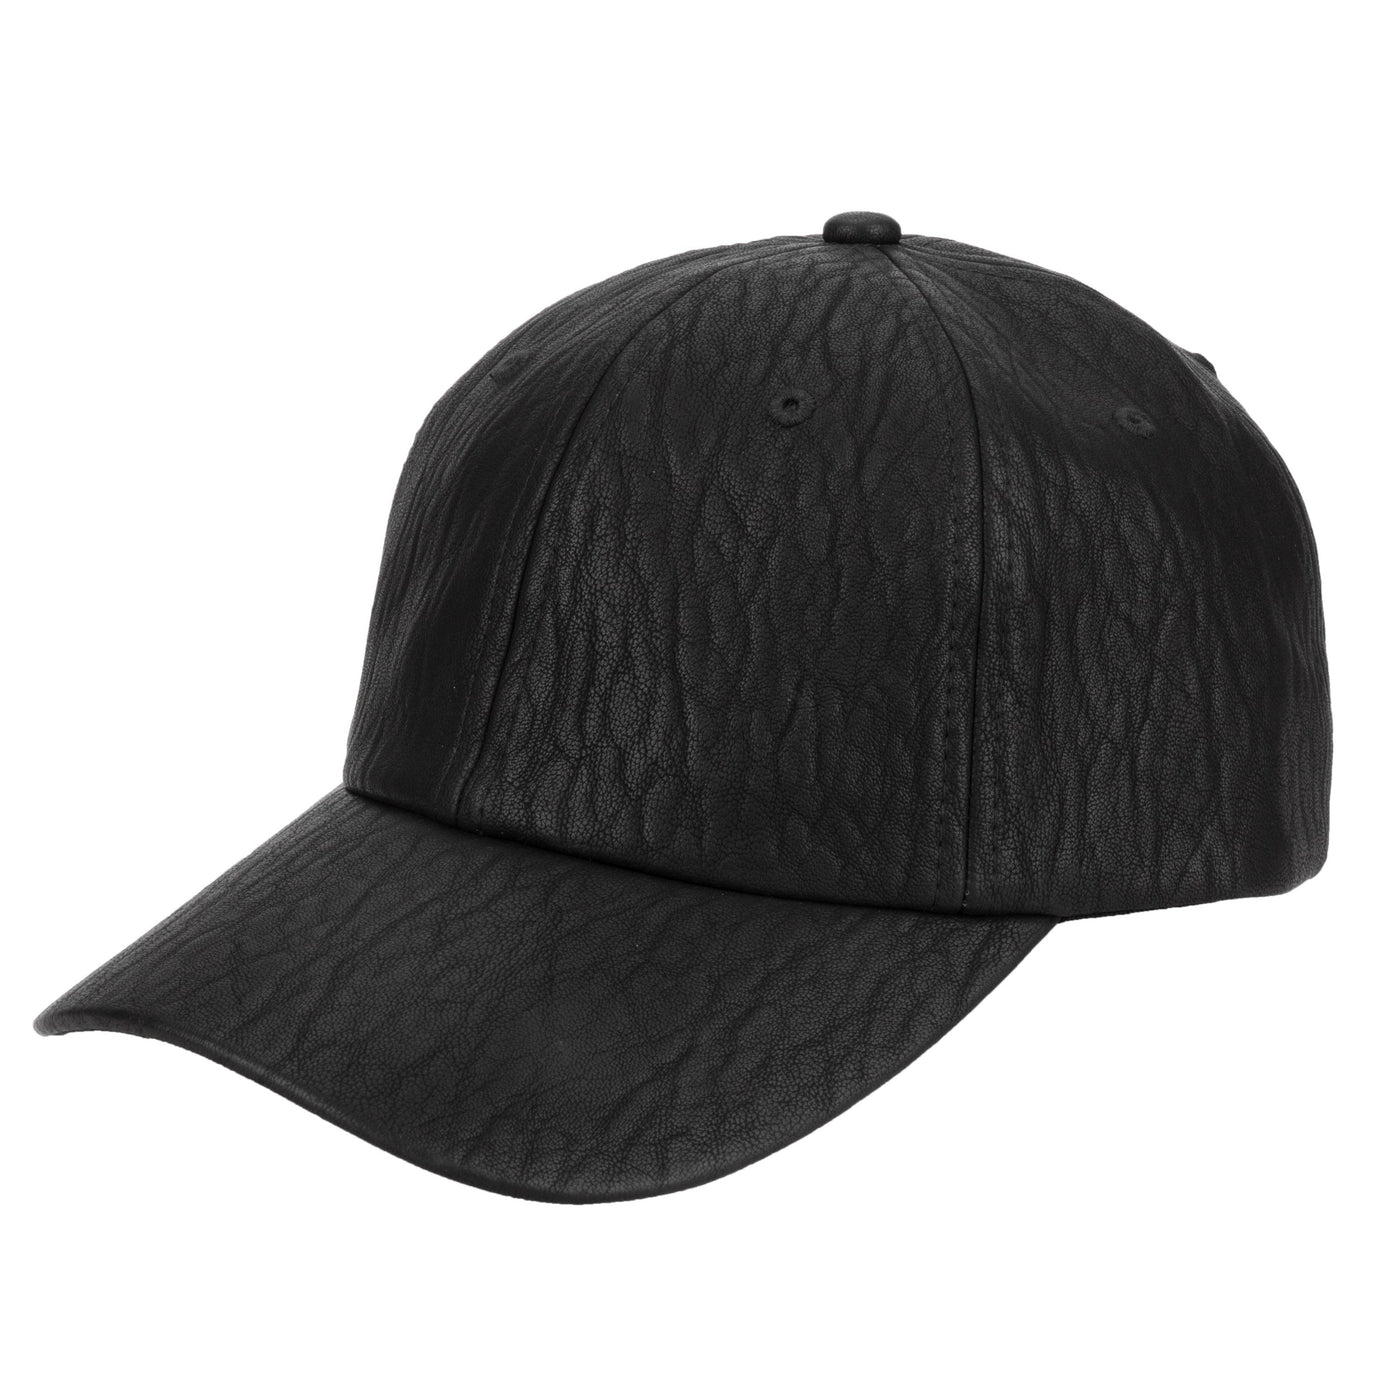 CAP - Women's Faux Leather Ball Cap W/ Elastic